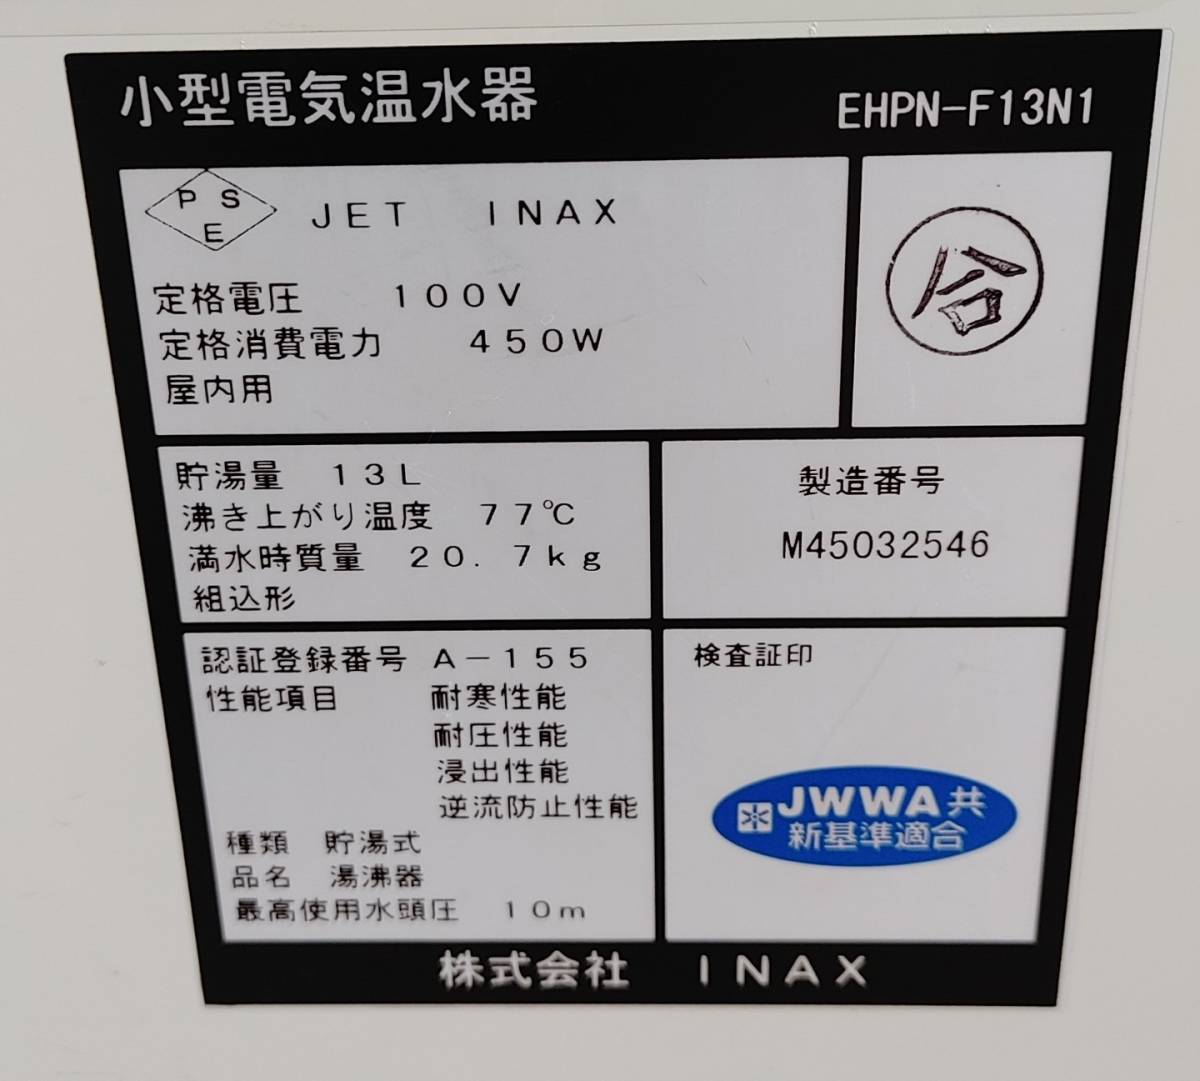 INAX ゆプラス 電気温水器 EHPN-F13N1 13L 100V W190mm×D340mm×H370㎜ 業務用 厨房機器 飲食店 C2312-130_画像6